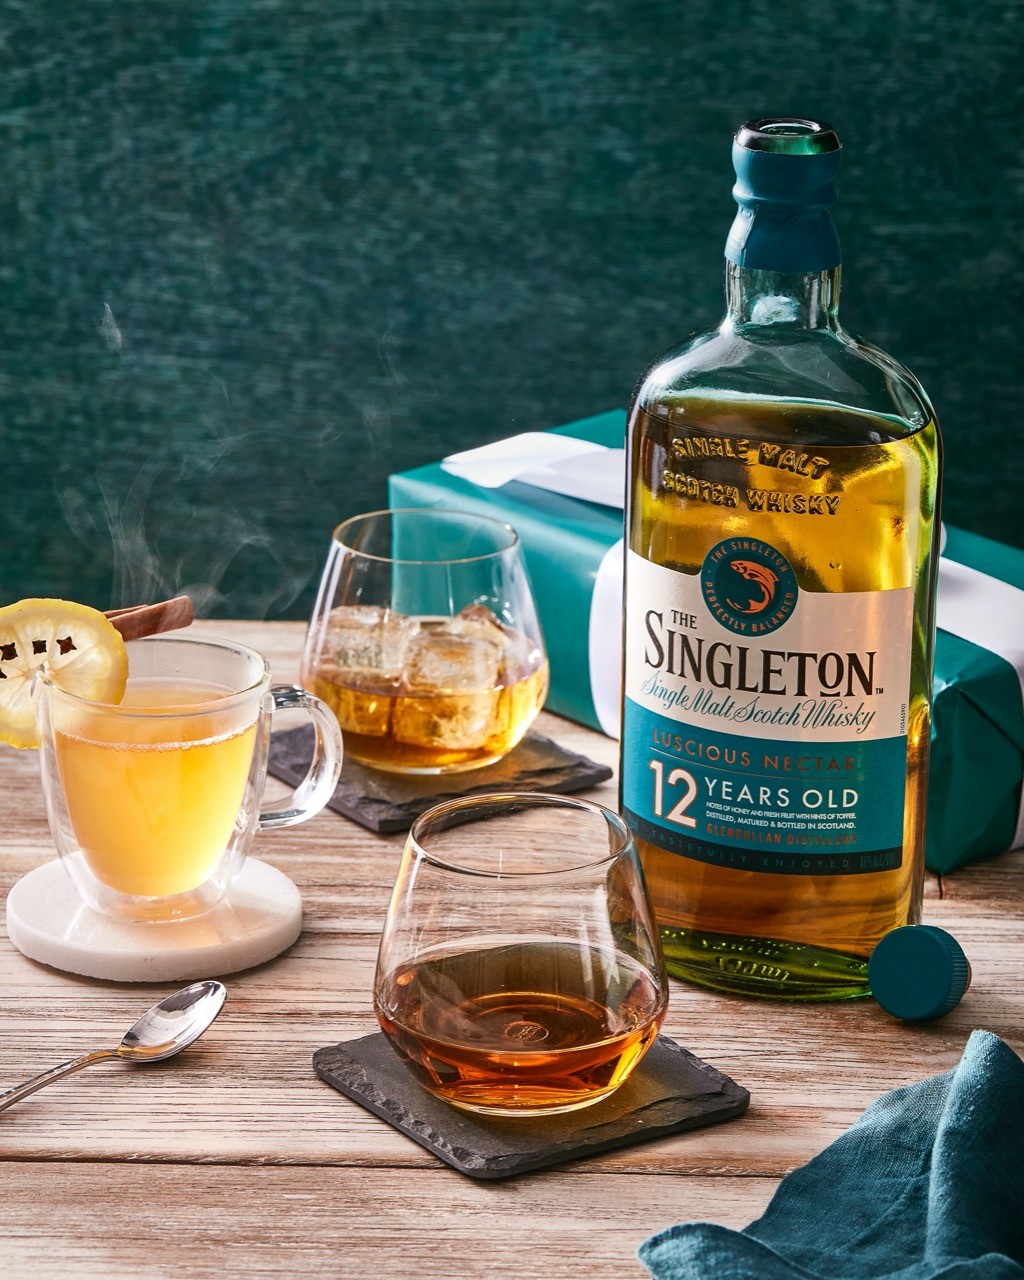 Para deixar o sabor ainda mais leve, o Singleton não utiliza turfa em seu processo de maltagem (Foto: Divulgação)